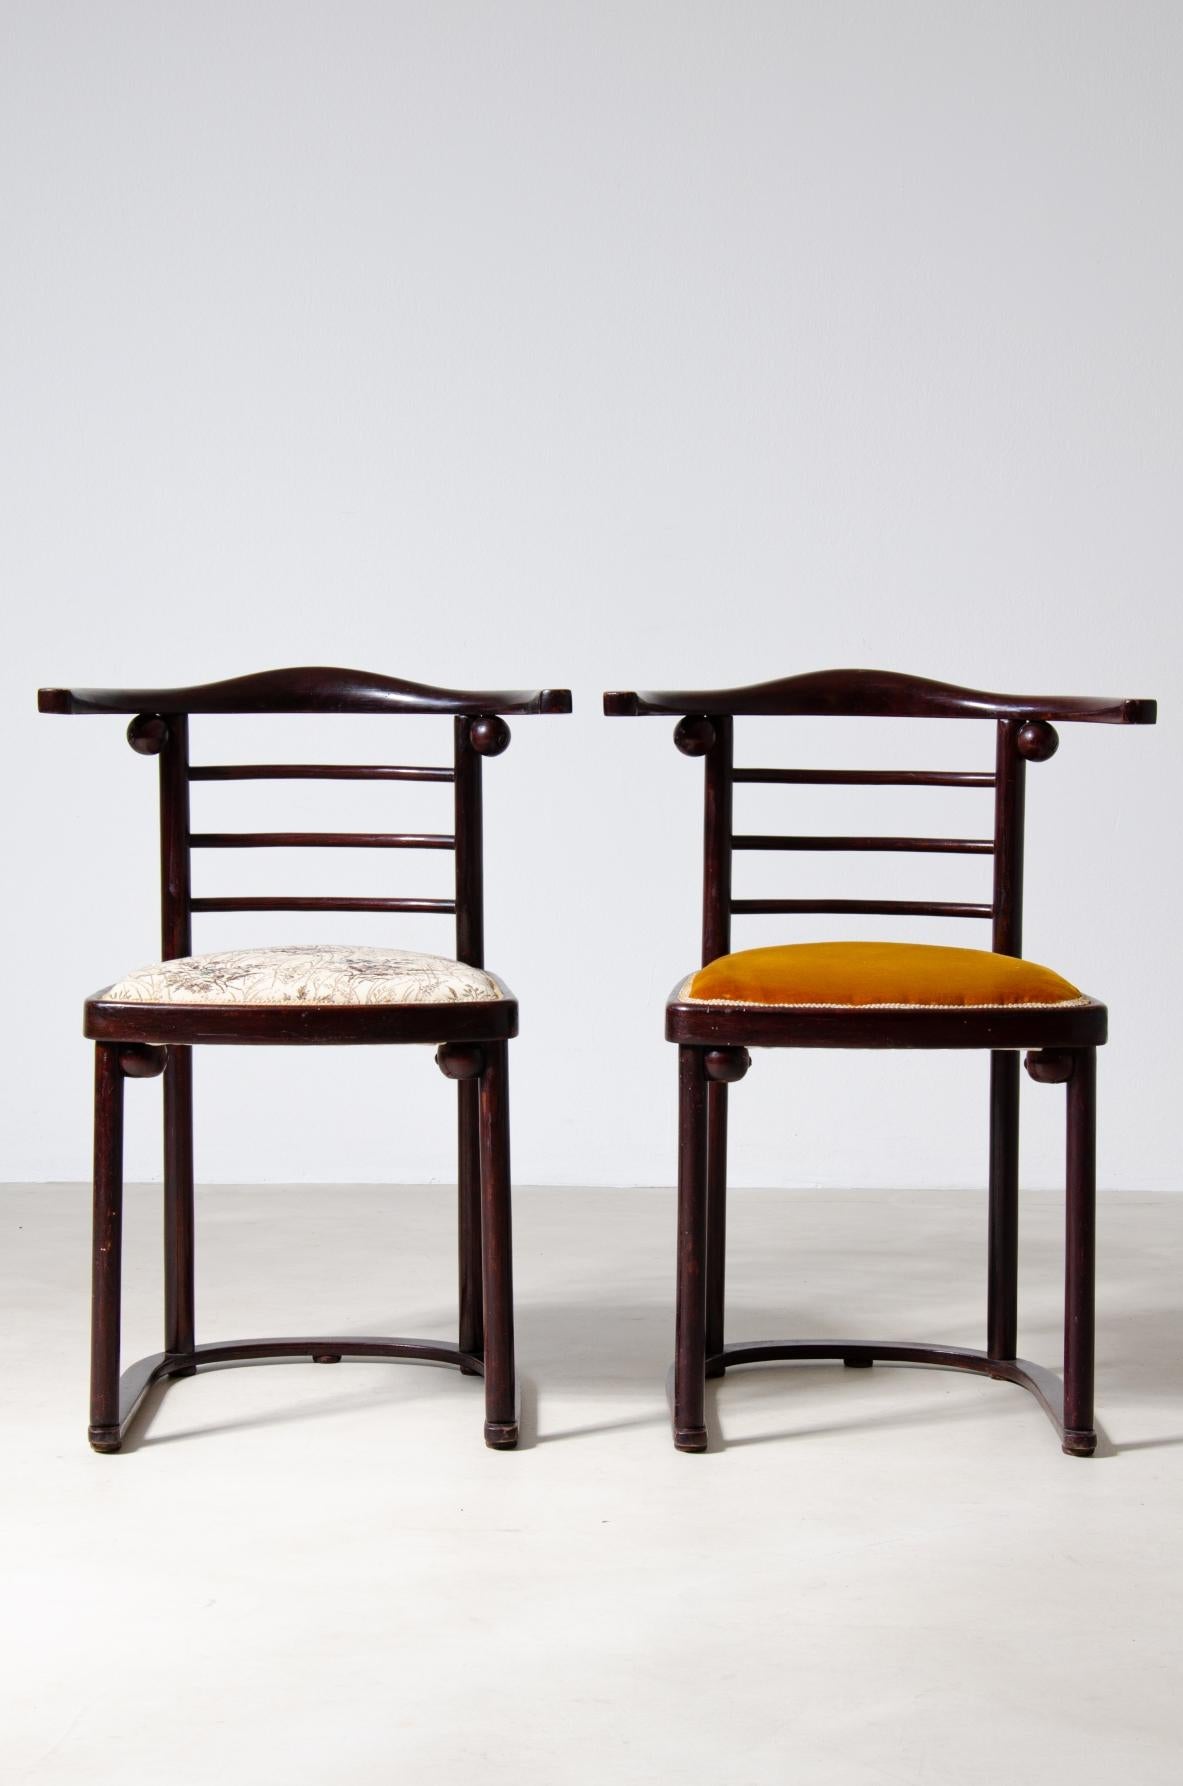 COD-2072
Josef Hoffmann (1870-1956)

Rare ensemble de quatre chaises en bois poli courbé et assise rembourrée.

Fabriqué par JJ.Kohn, Vienne, 1907.

42x42xh46/75